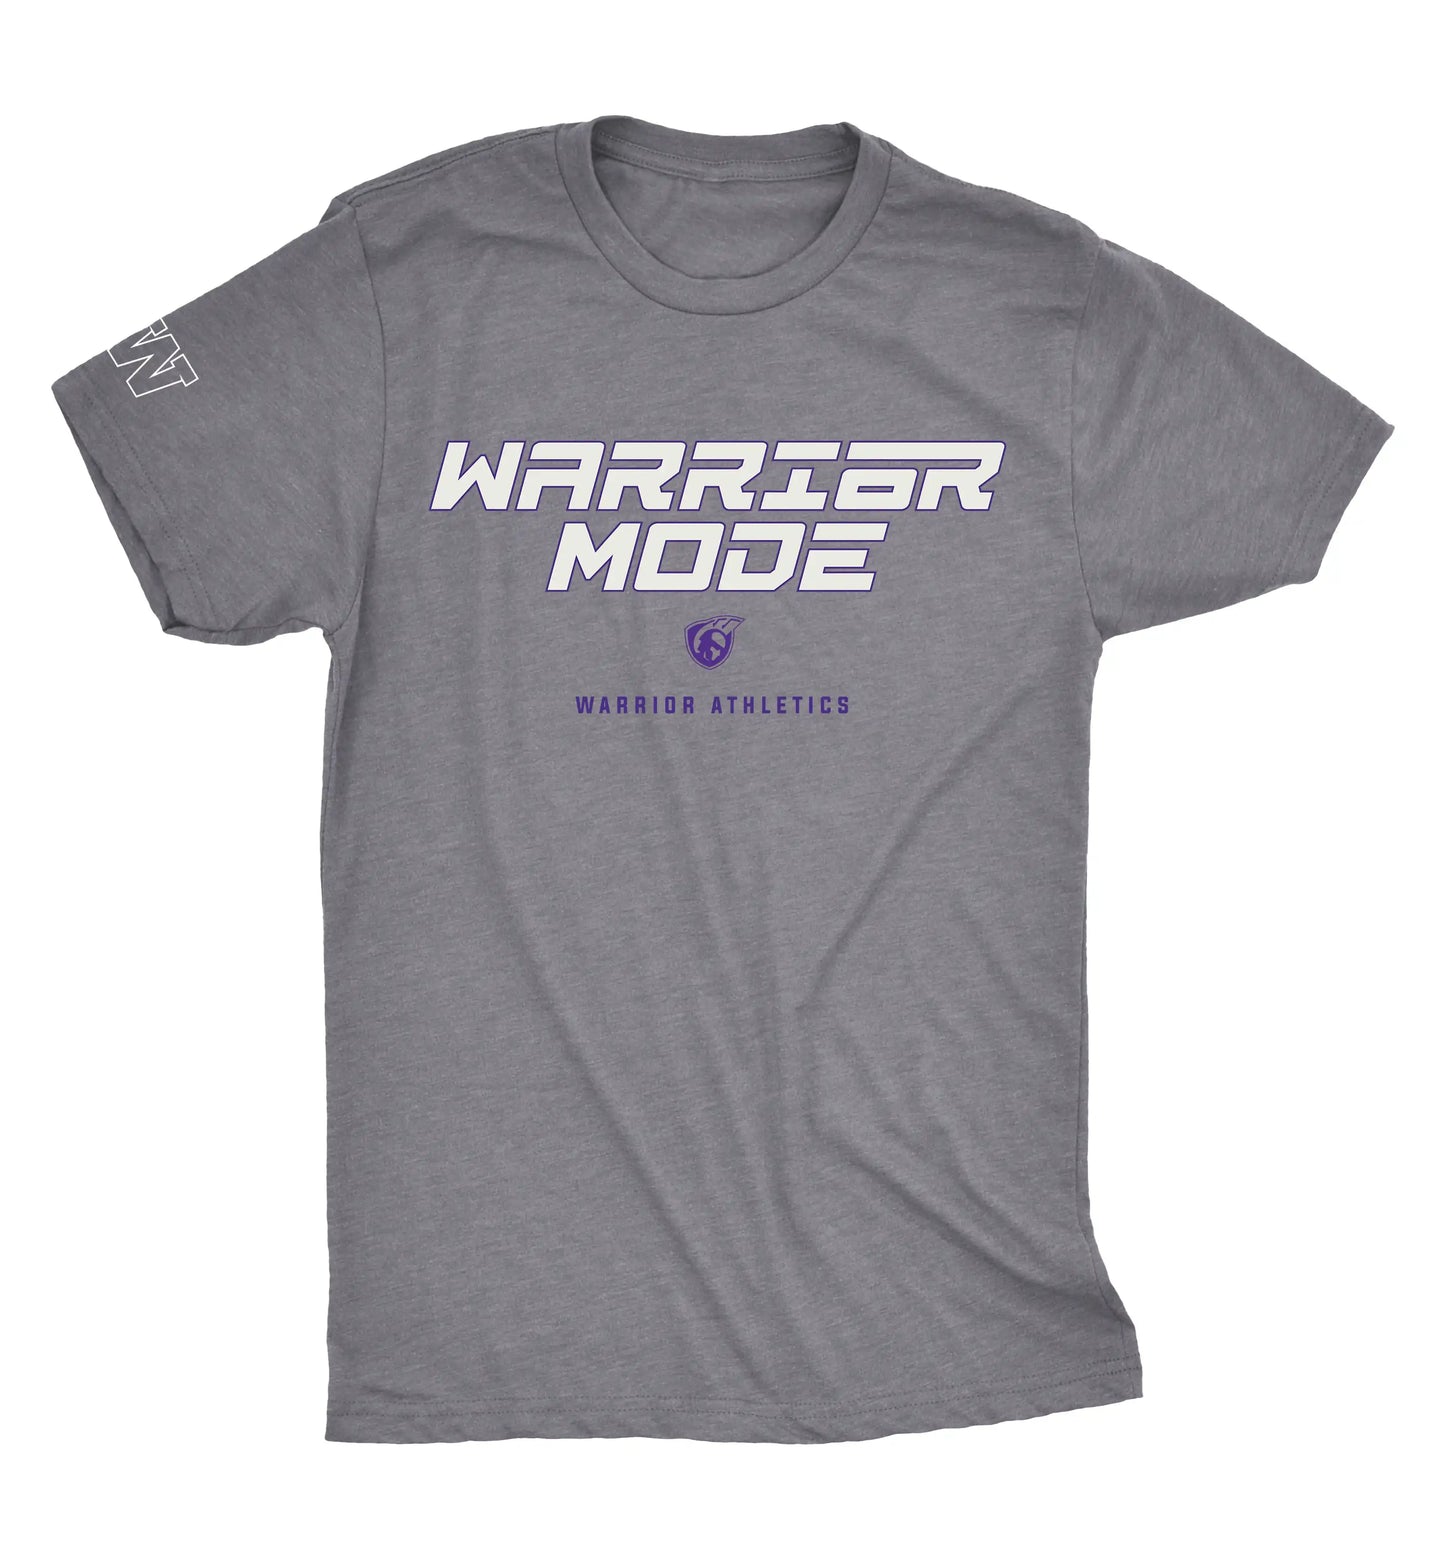 WARRIOR MODE - Warrior Athletics Tshirt